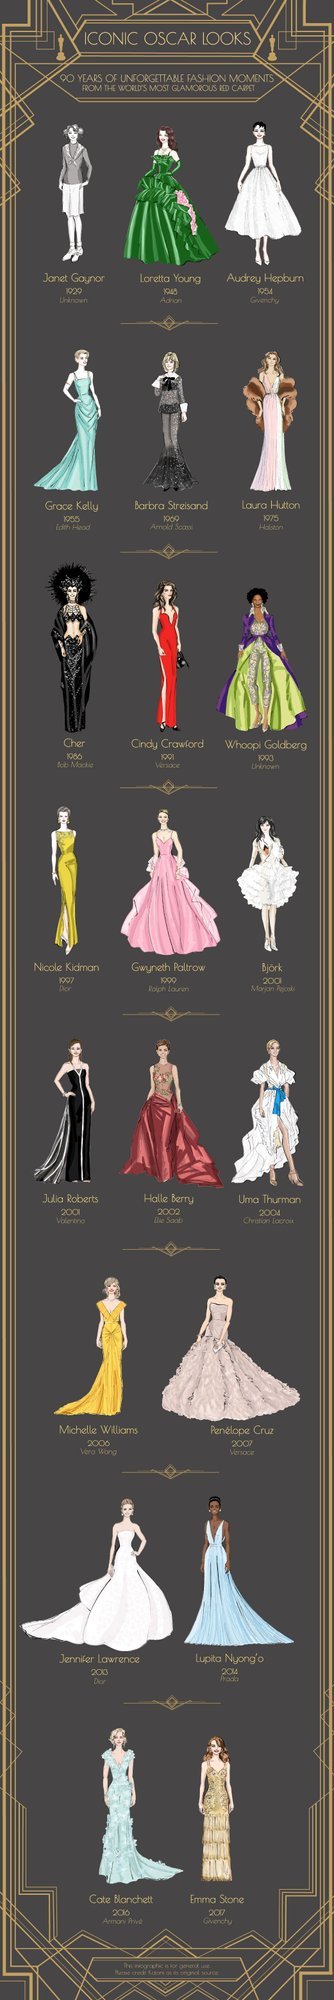 Anne Rasilaineni illustratsioon ikoonilistest Oscari kleitidest.